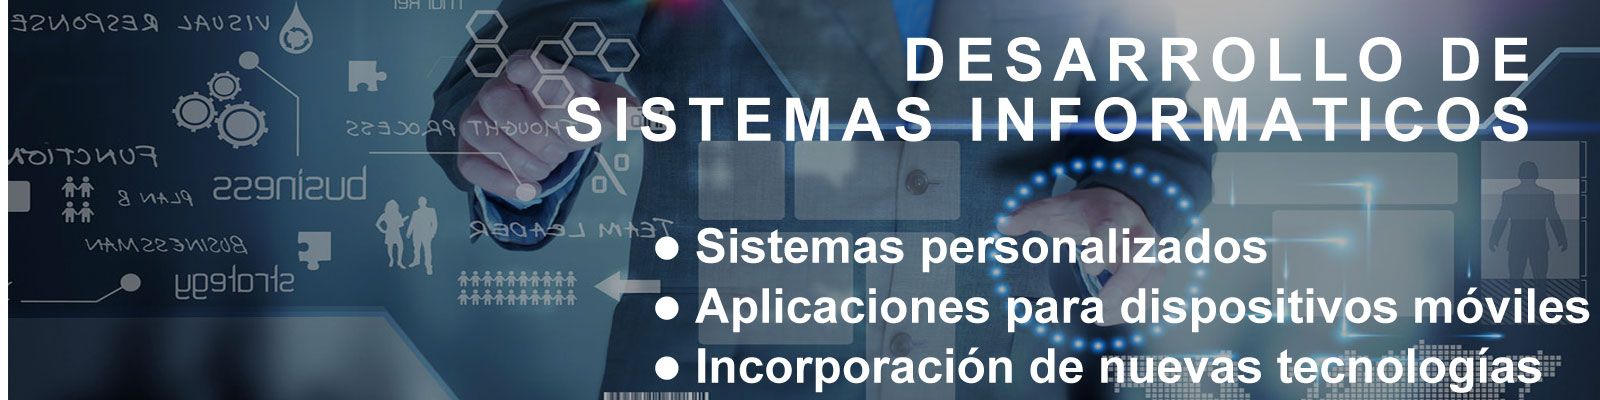 desarrollo de sistemas informaticos a medida cochabamba 